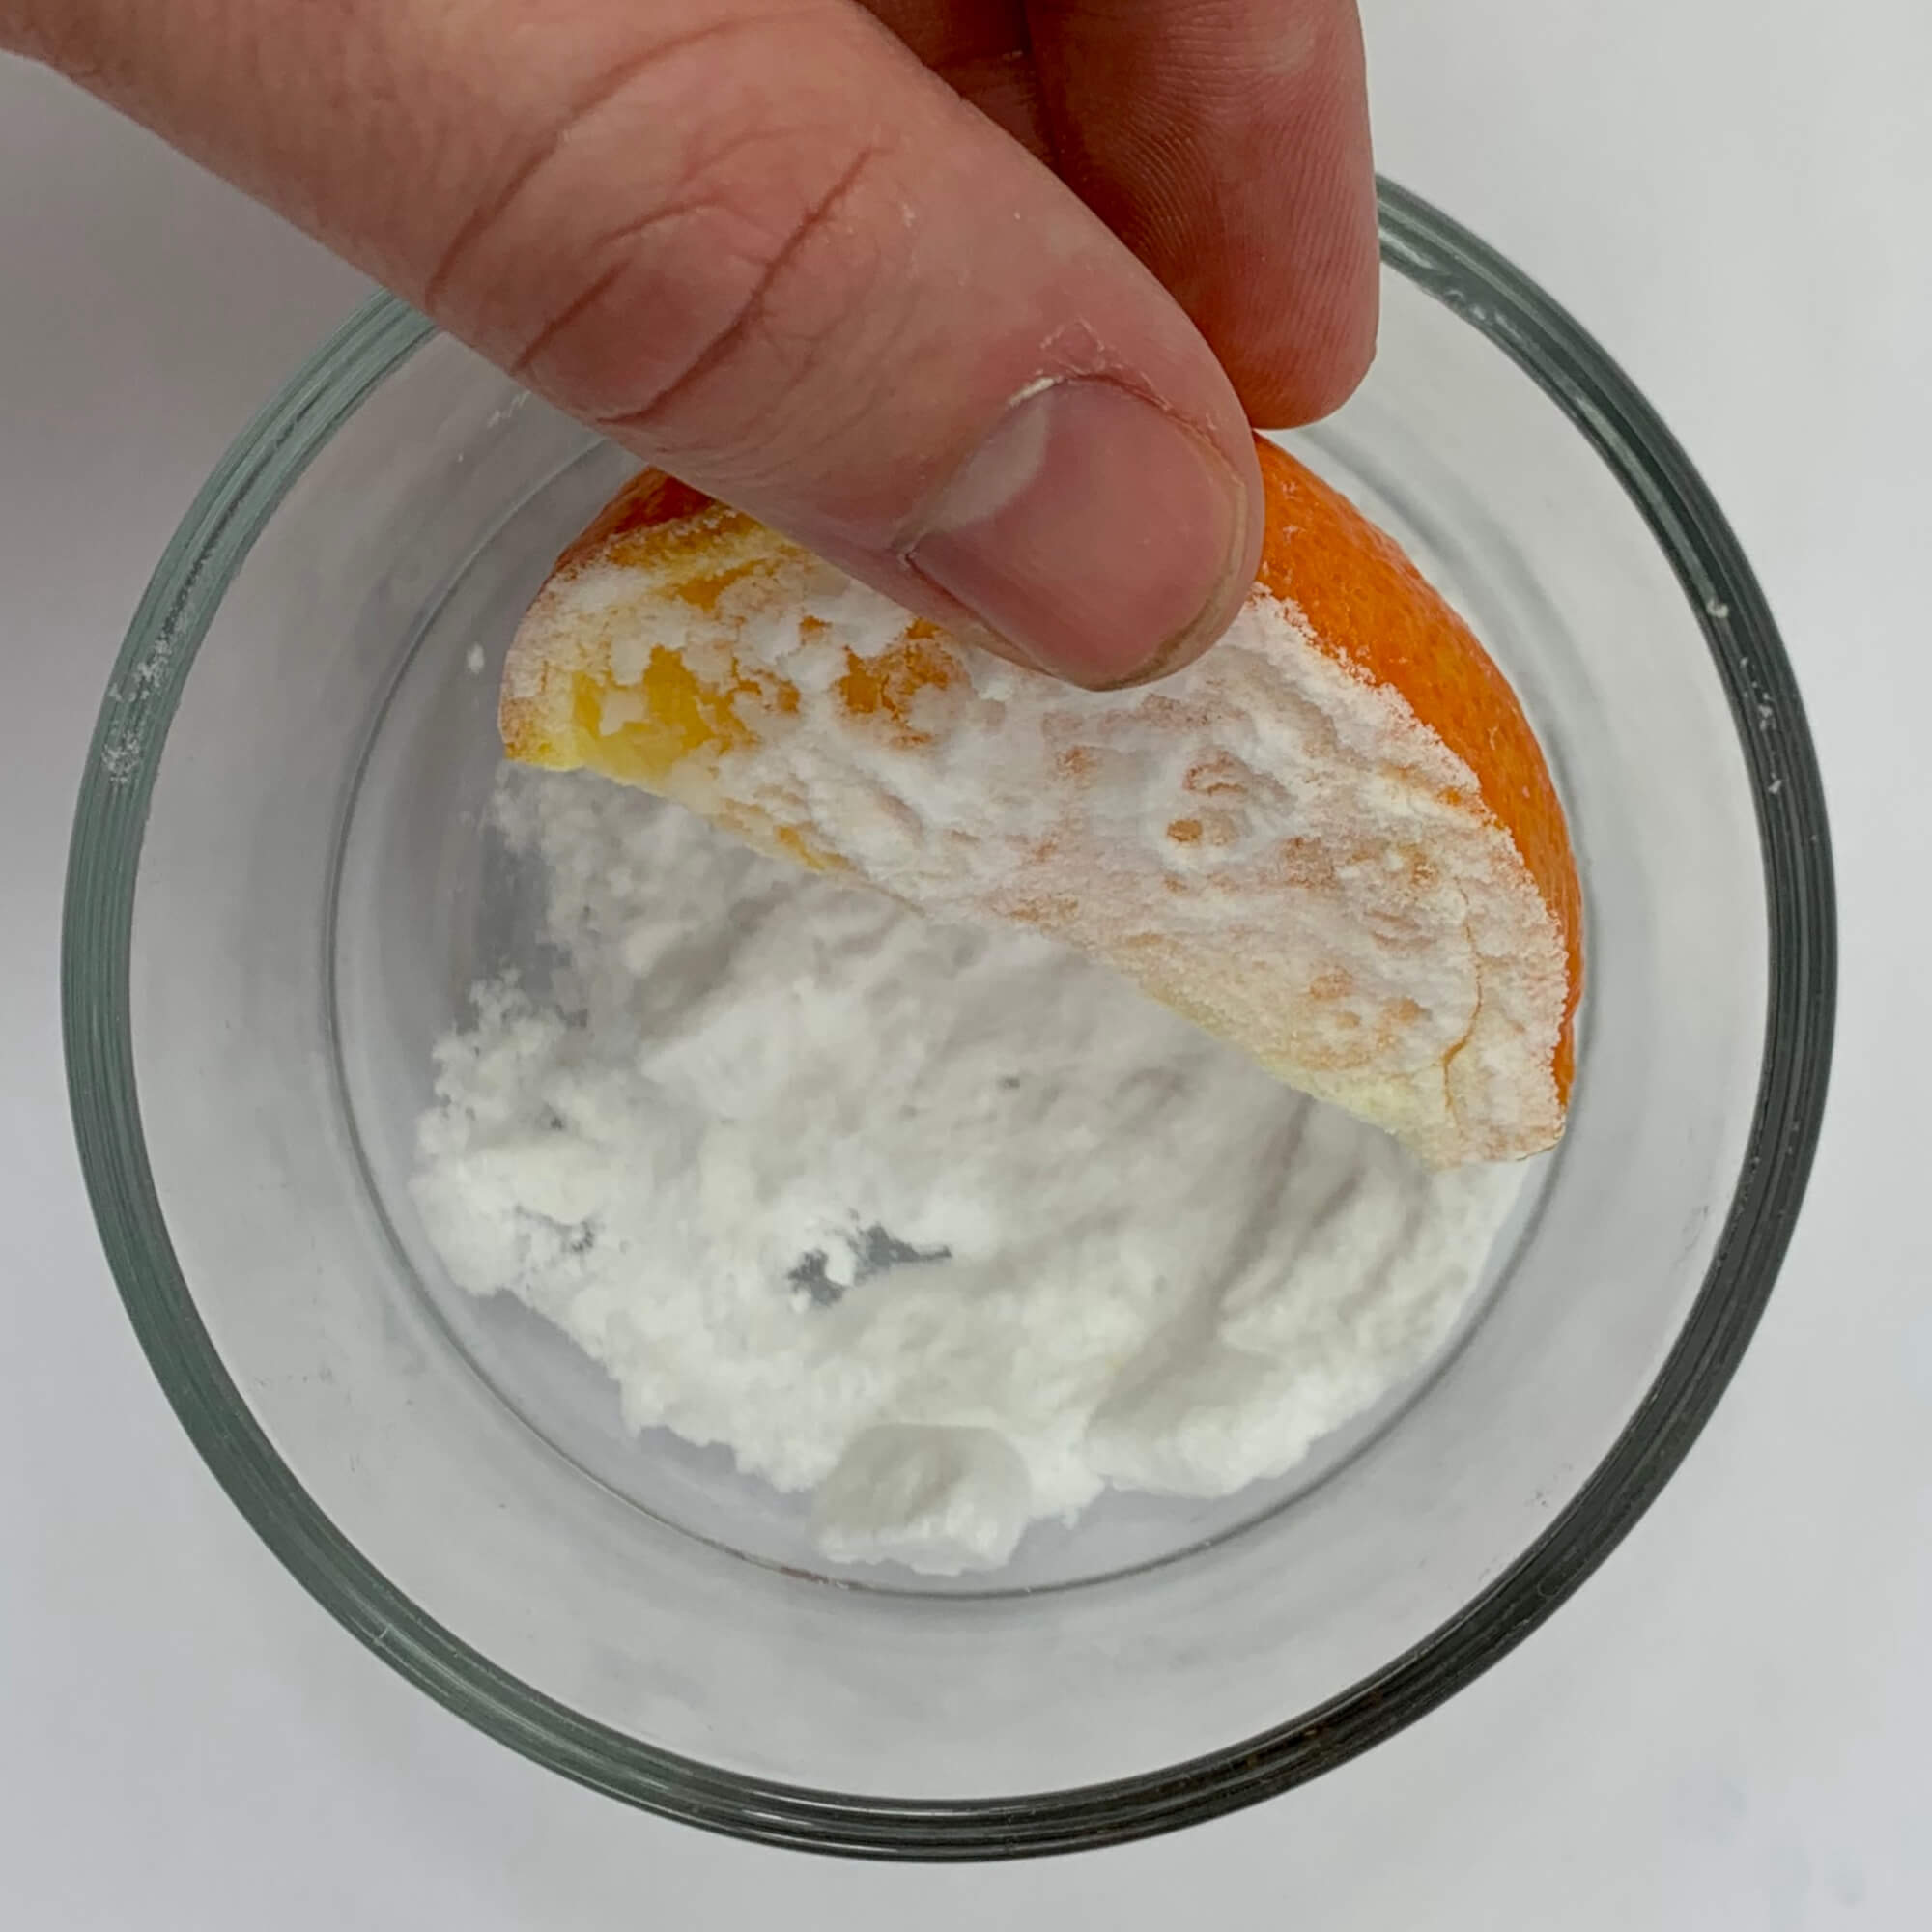 Fizzing Oranges Experiment